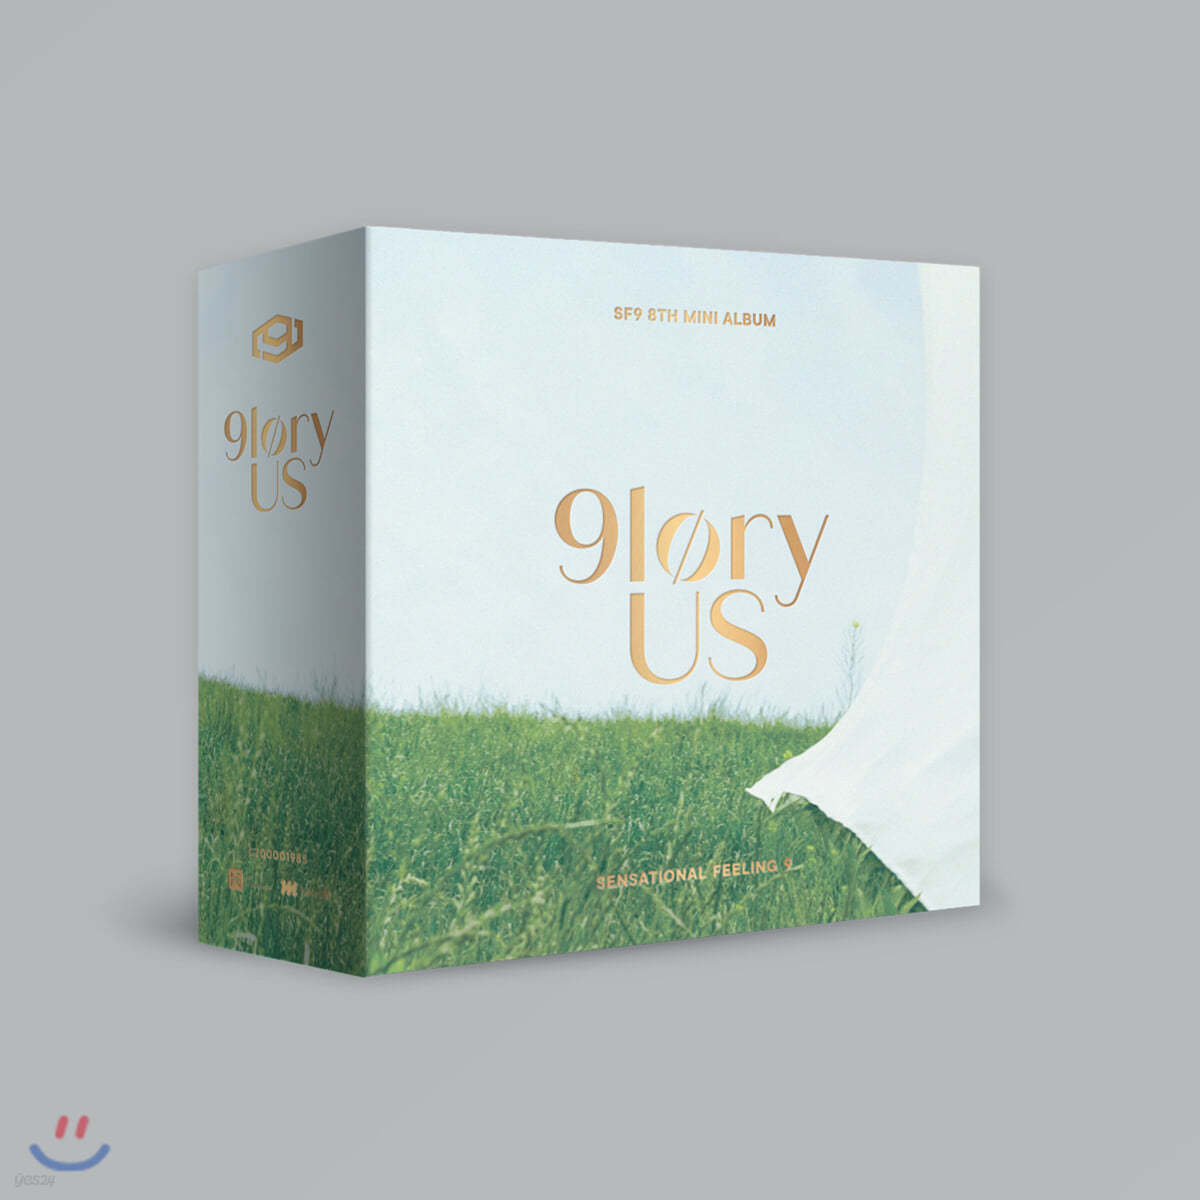 에스에프나인 (SF9) - 미니앨범 8집 : 9loryUS [스마트 뮤직 앨범(키트 앨범)] 